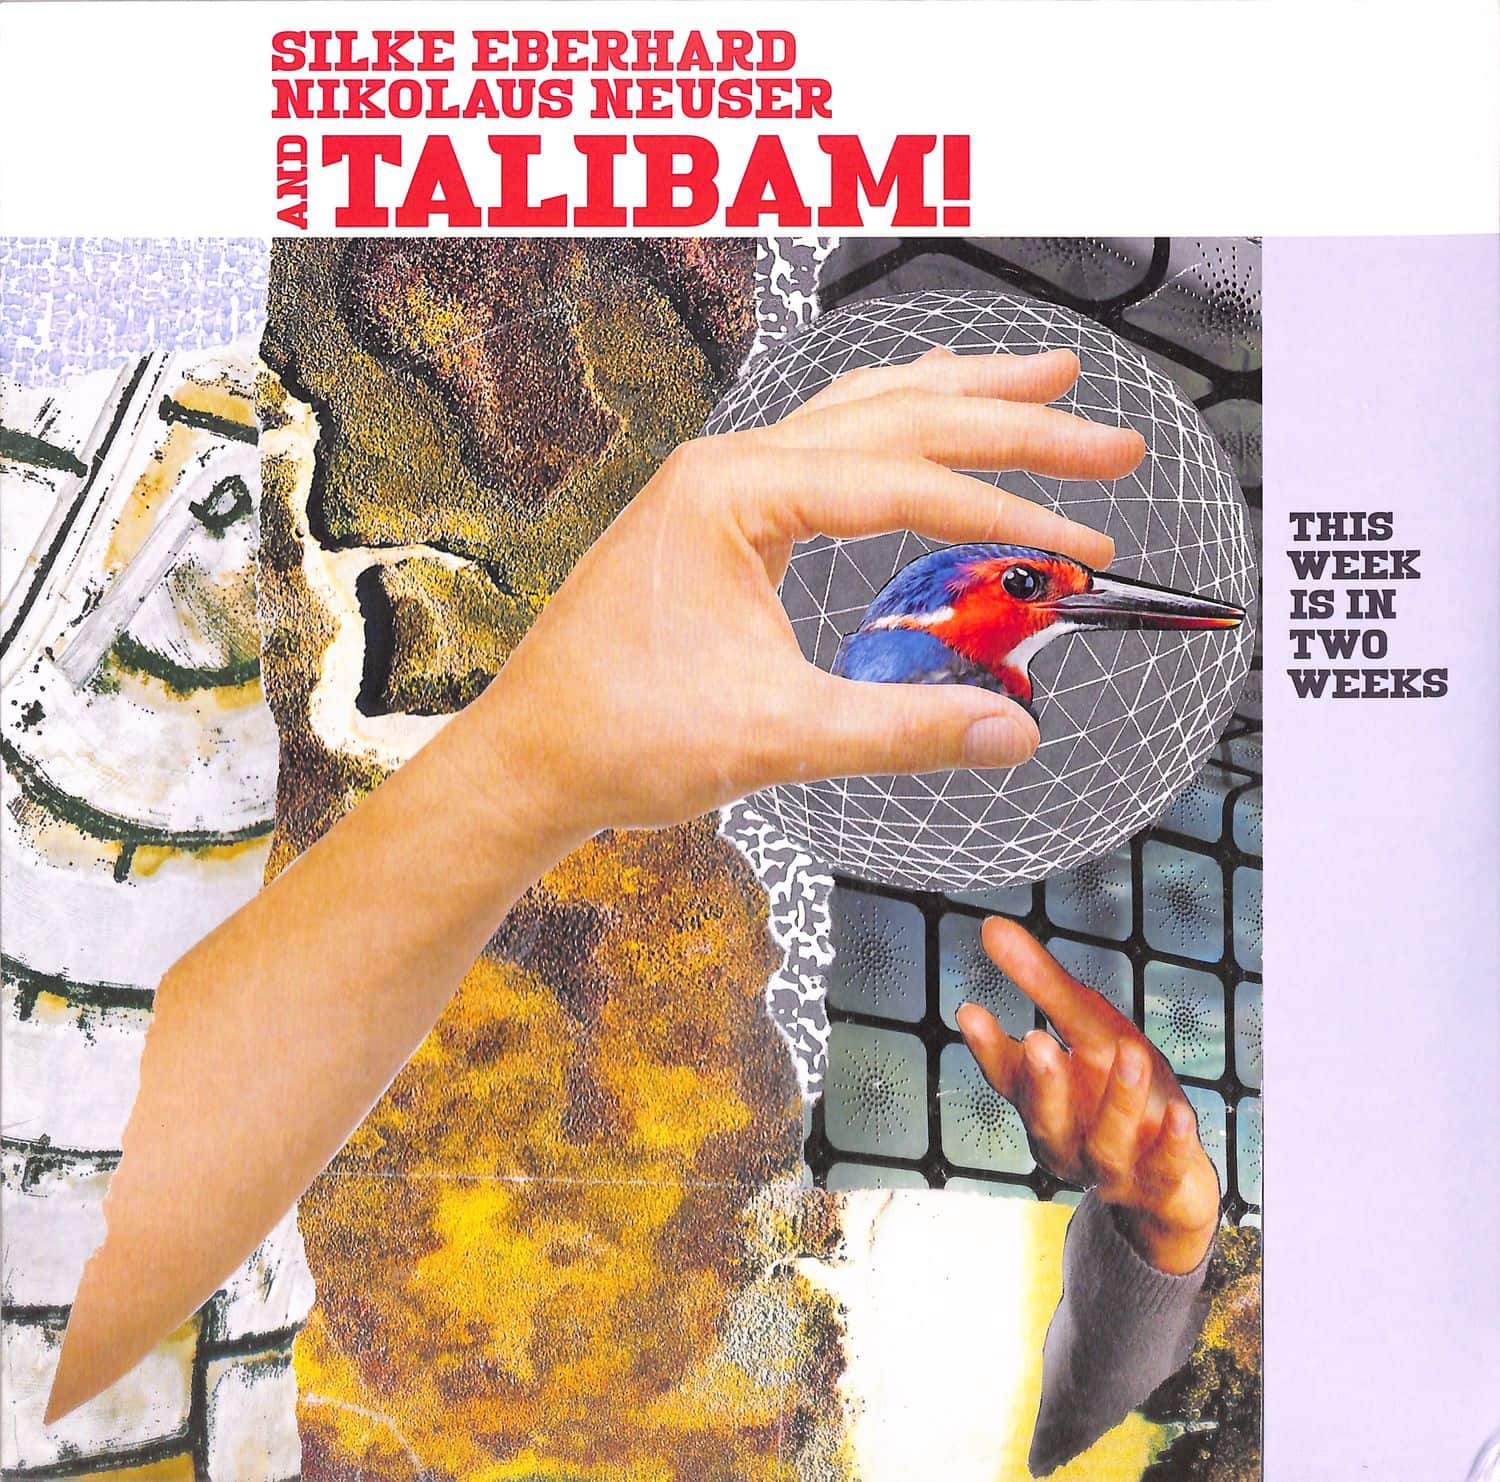 Talibam! with Silke Eberhard & Nikolaus Neuser - THIS WEEK IS IN TWO WEEKS 